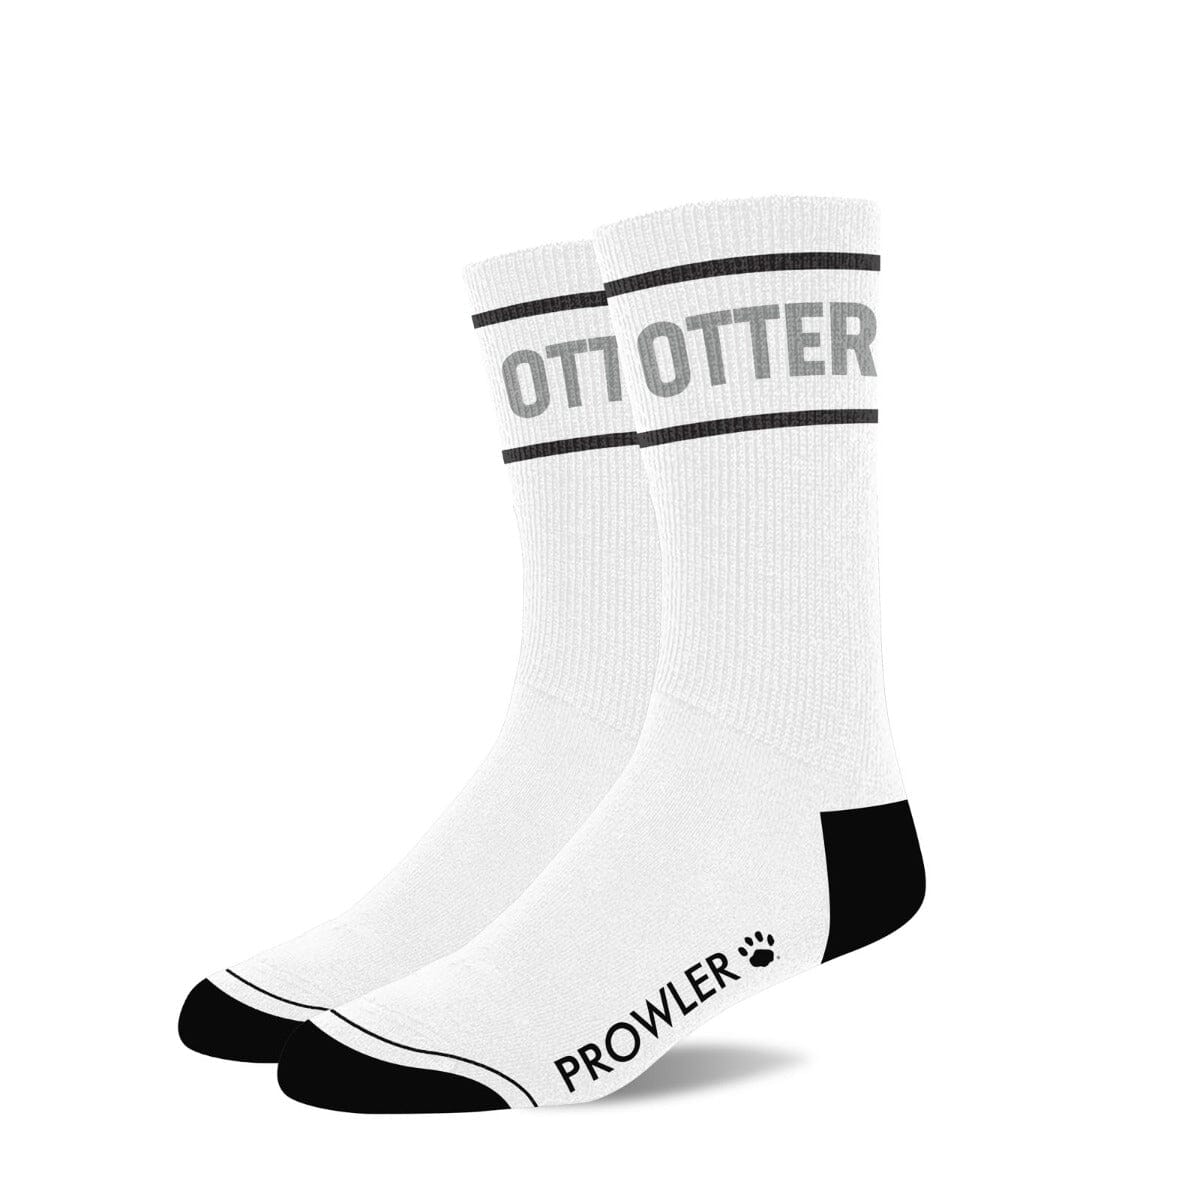 Prowler RED Otter Socken